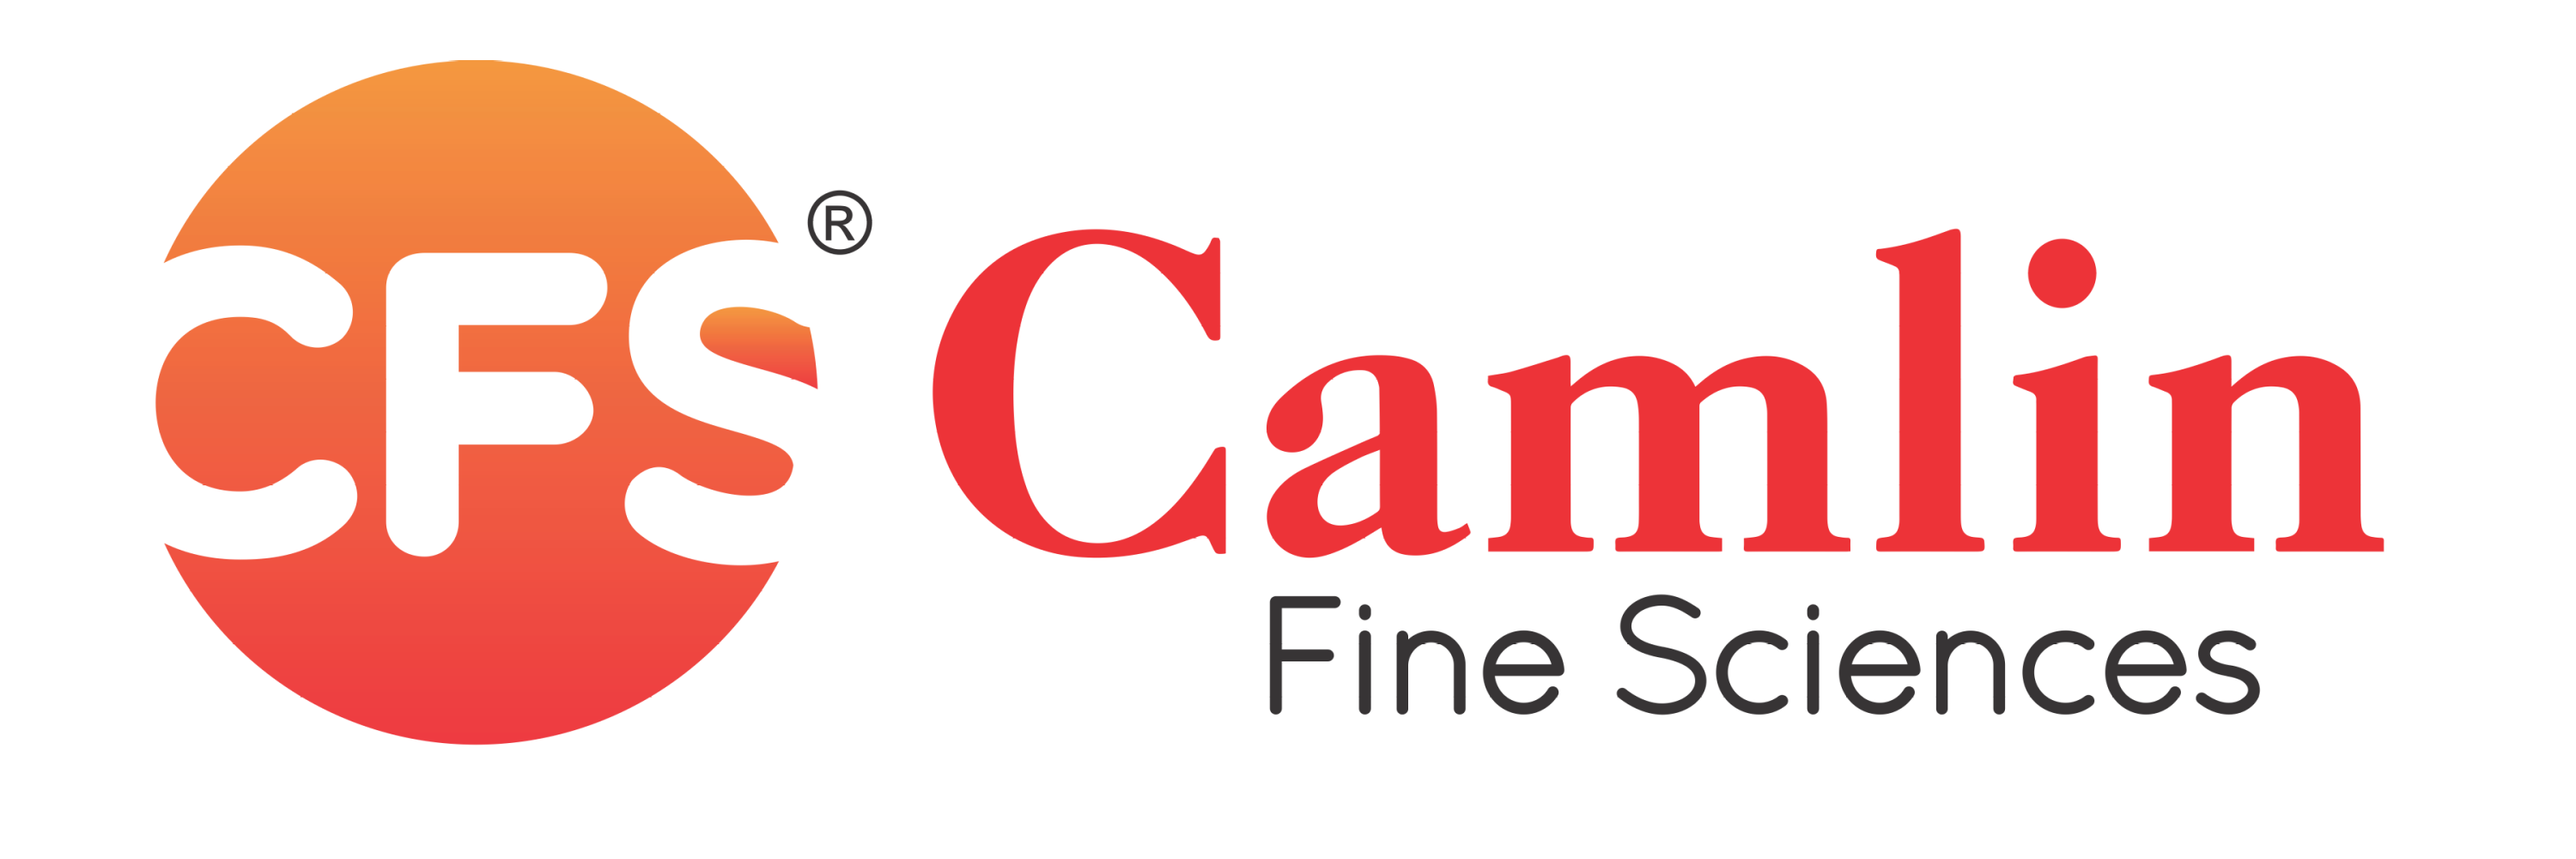 Camlin Fine Sciences